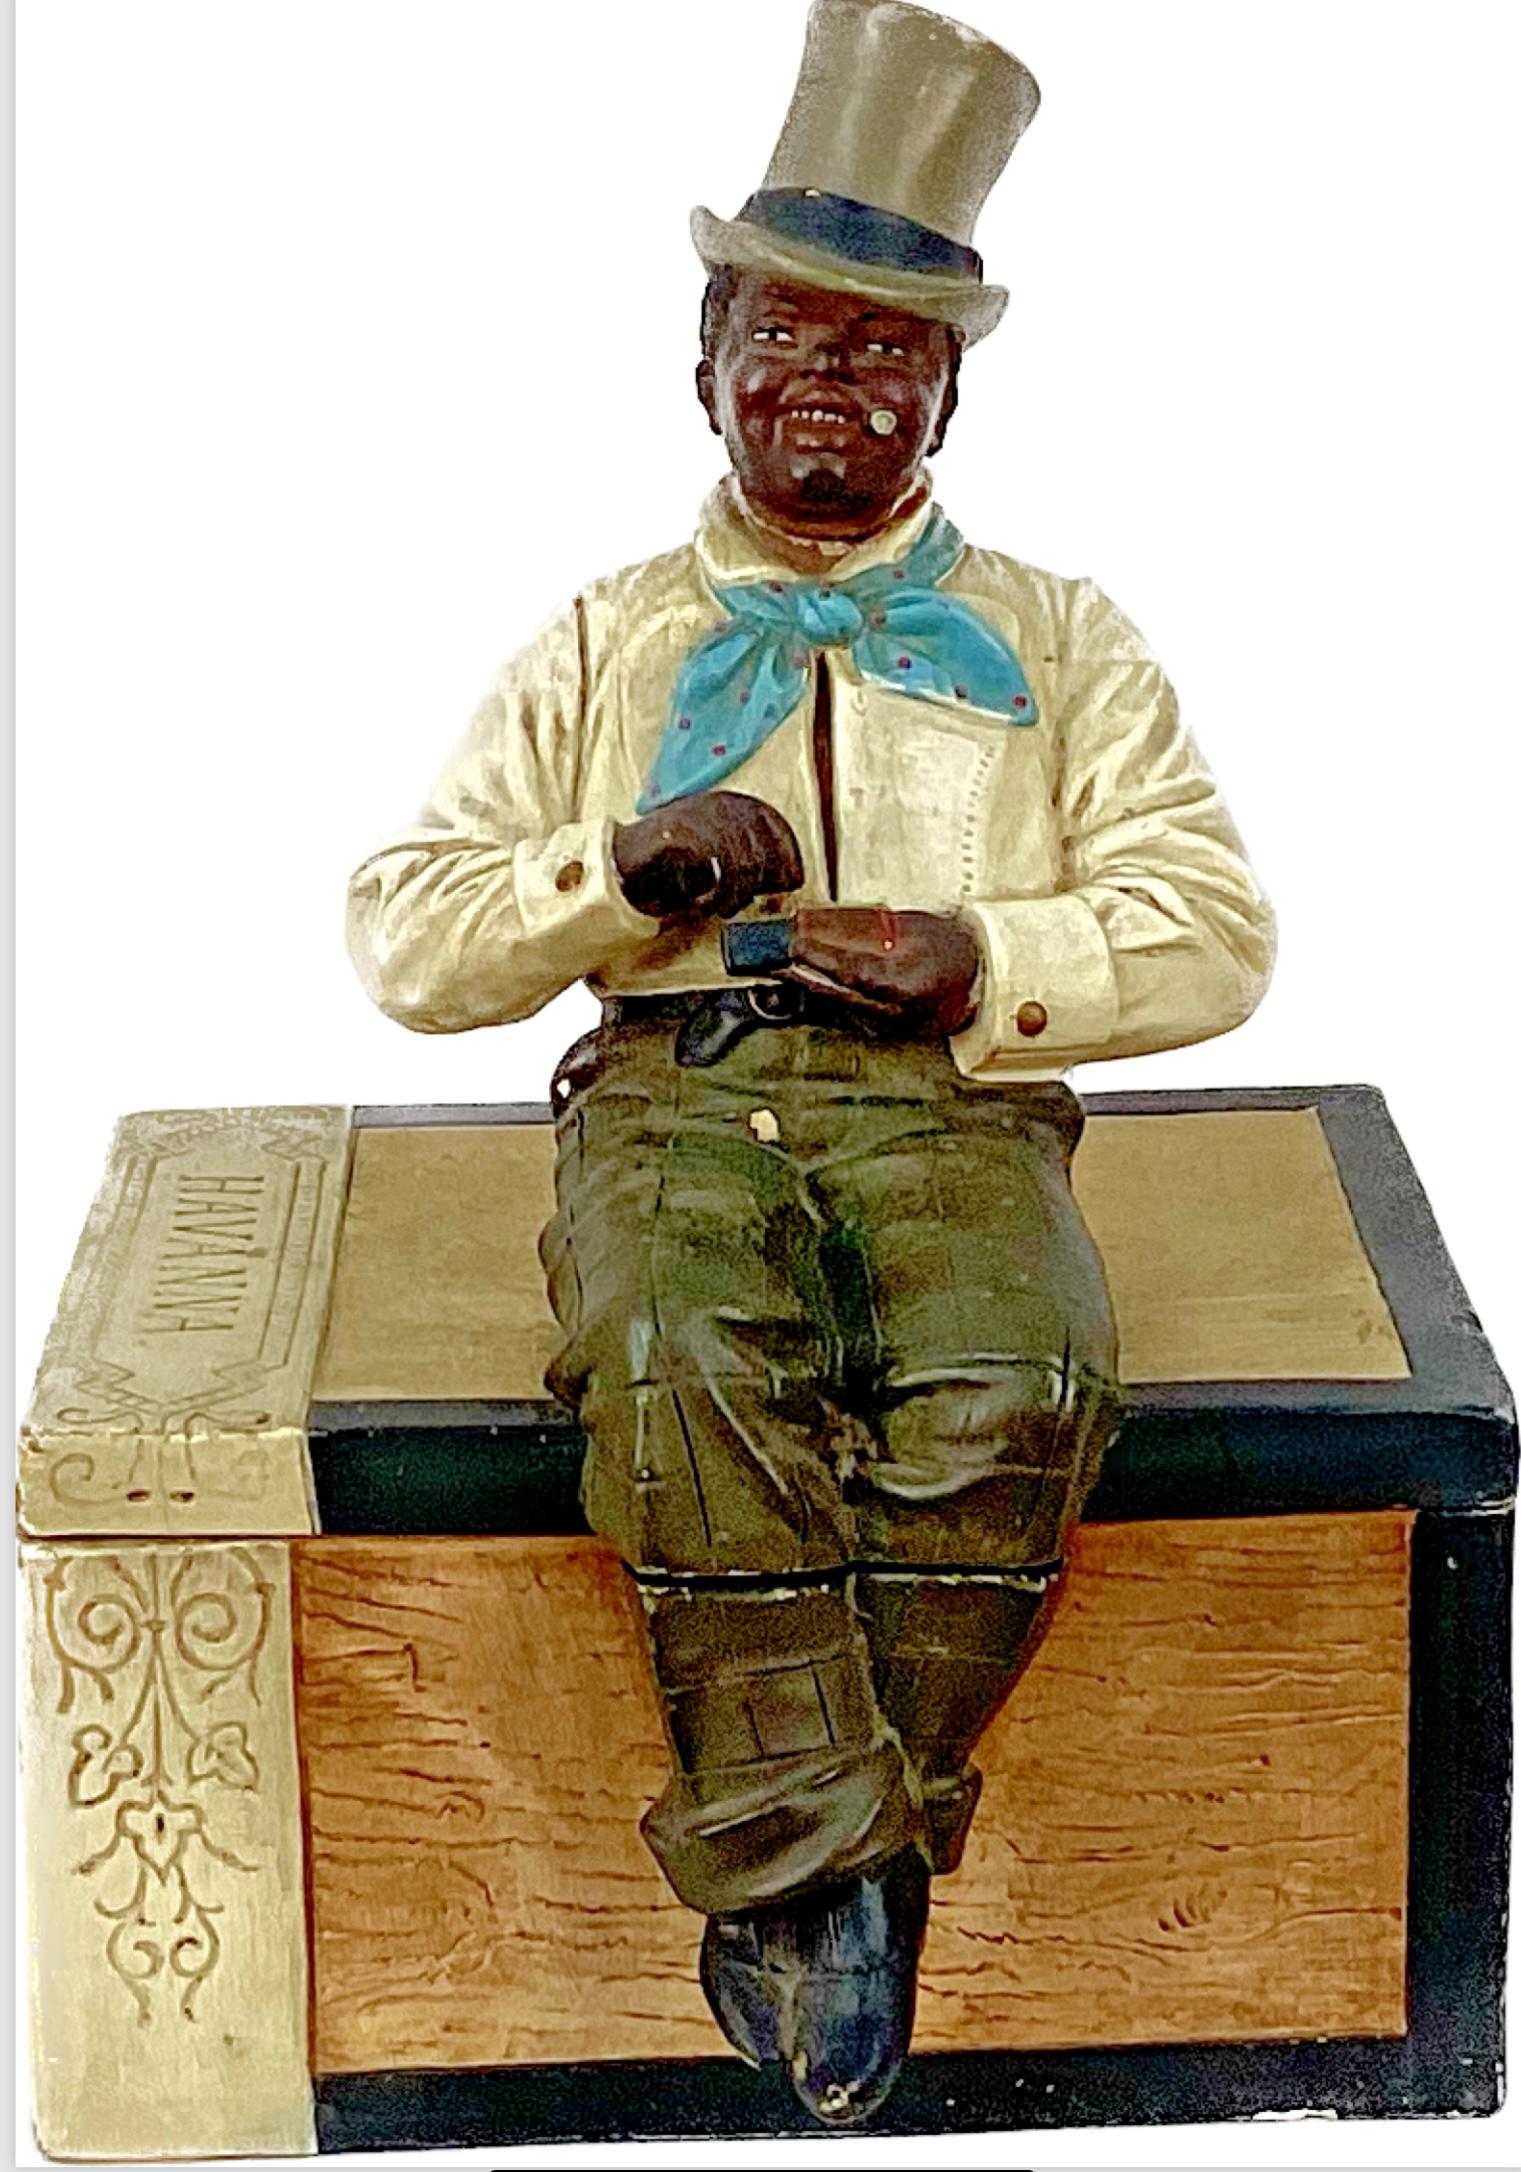 Schwarzer Mann Zigarrenglas aus Keramik. Aus Österreich, um 1900, in Form einer hölzernen Zigarrenkiste. Ein adrett gekleideter schwarzer Mann mit Zylinder sitzt auf dem Deckel und hält eine altmodische Streichholzschachtel in der Hand. Realistische